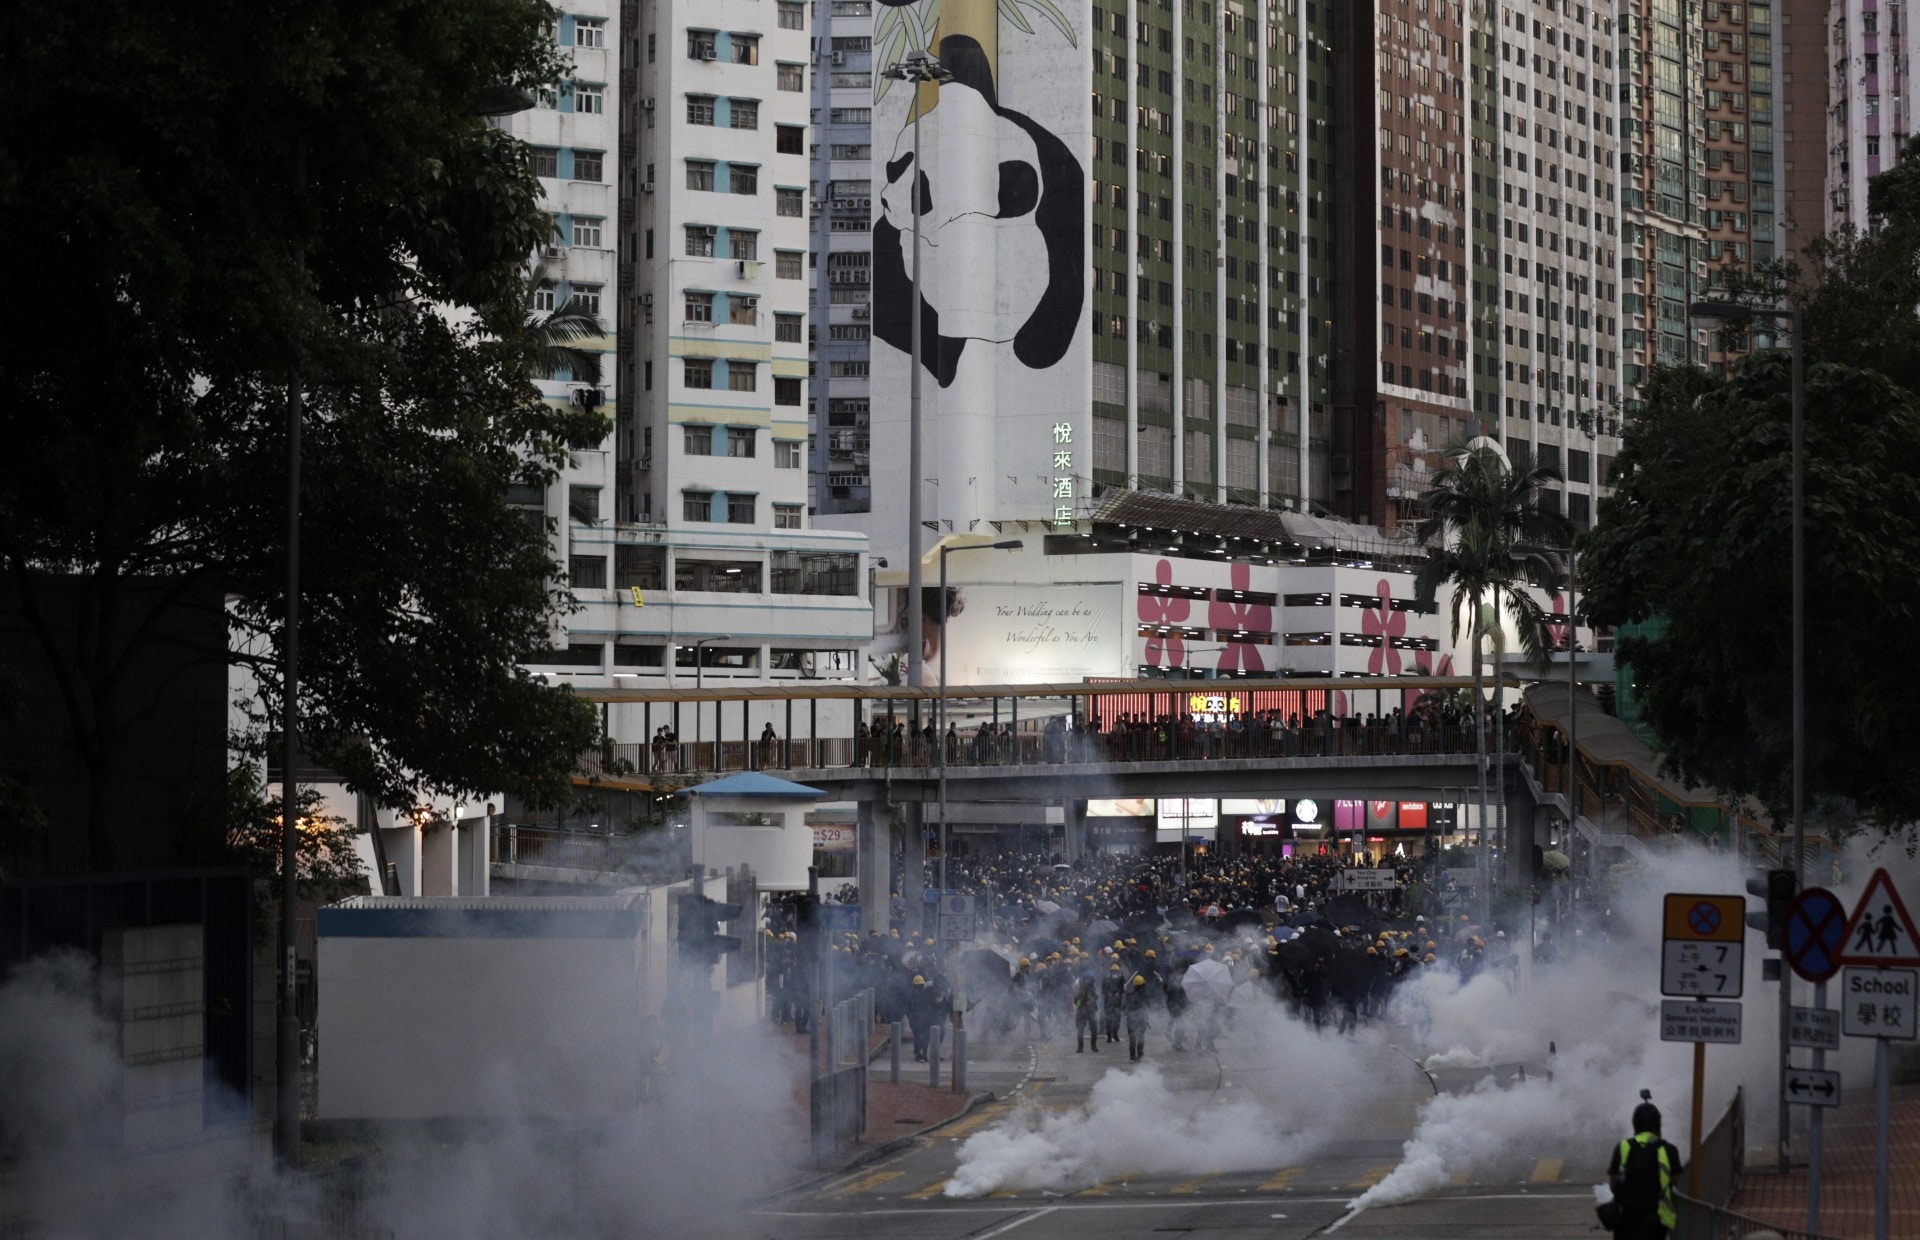 8 5罷工 市民評堵路行為反應不一 一小撮人引發示威衝突 香港01 社會新聞